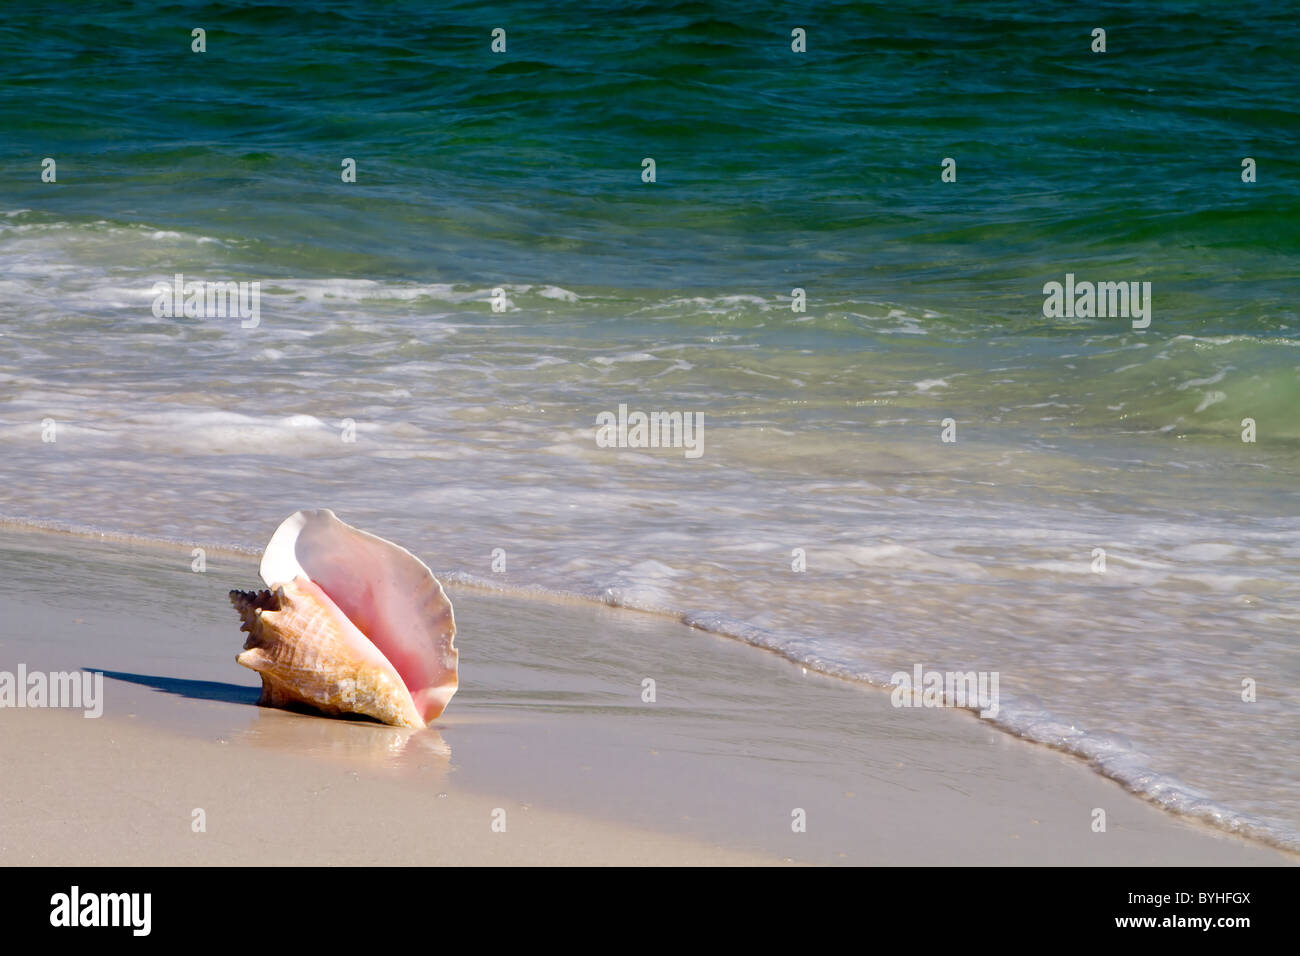 Le lambi, aussi connu comme une conque rose, repose sur une plage de sable fin avec le clapotis des vagues. Banque D'Images